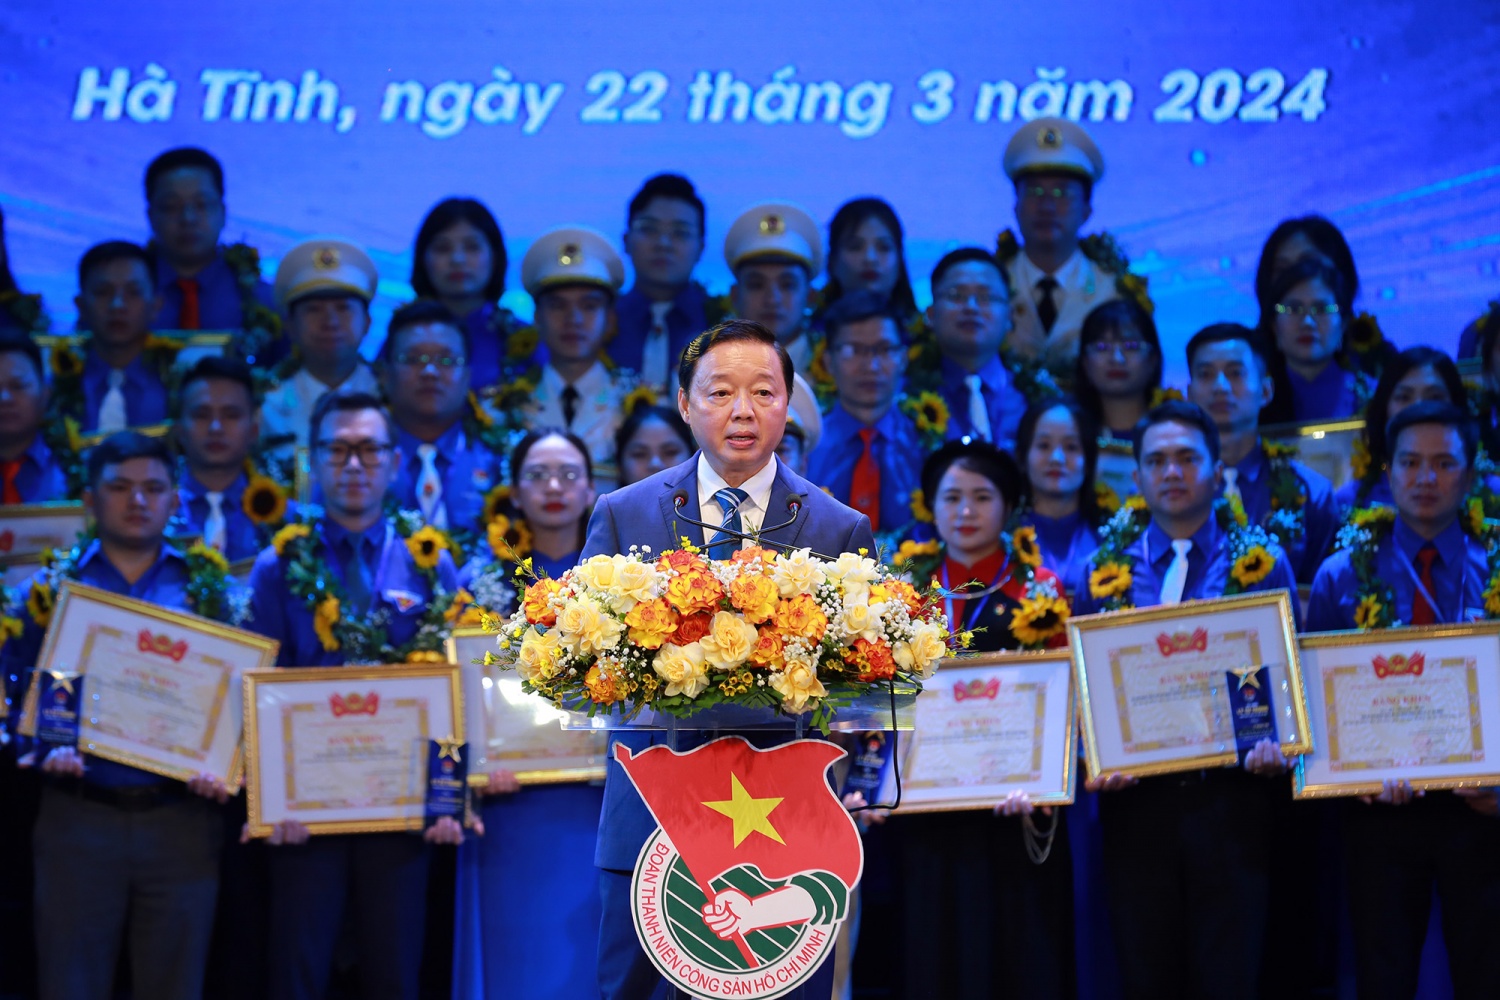 Phó Thủ tướng Trần Hồng Hà: Đoàn Thanh niên tiếp tục đổi mới phương thức tổ chức, hoạt động sinh động, gắn bó chặt chẽ với những vấn đề thực tiễn của đời sống; tránh phong trào, hình thức, hành chính hóa - Ảnh: VGP/Minh Khôi